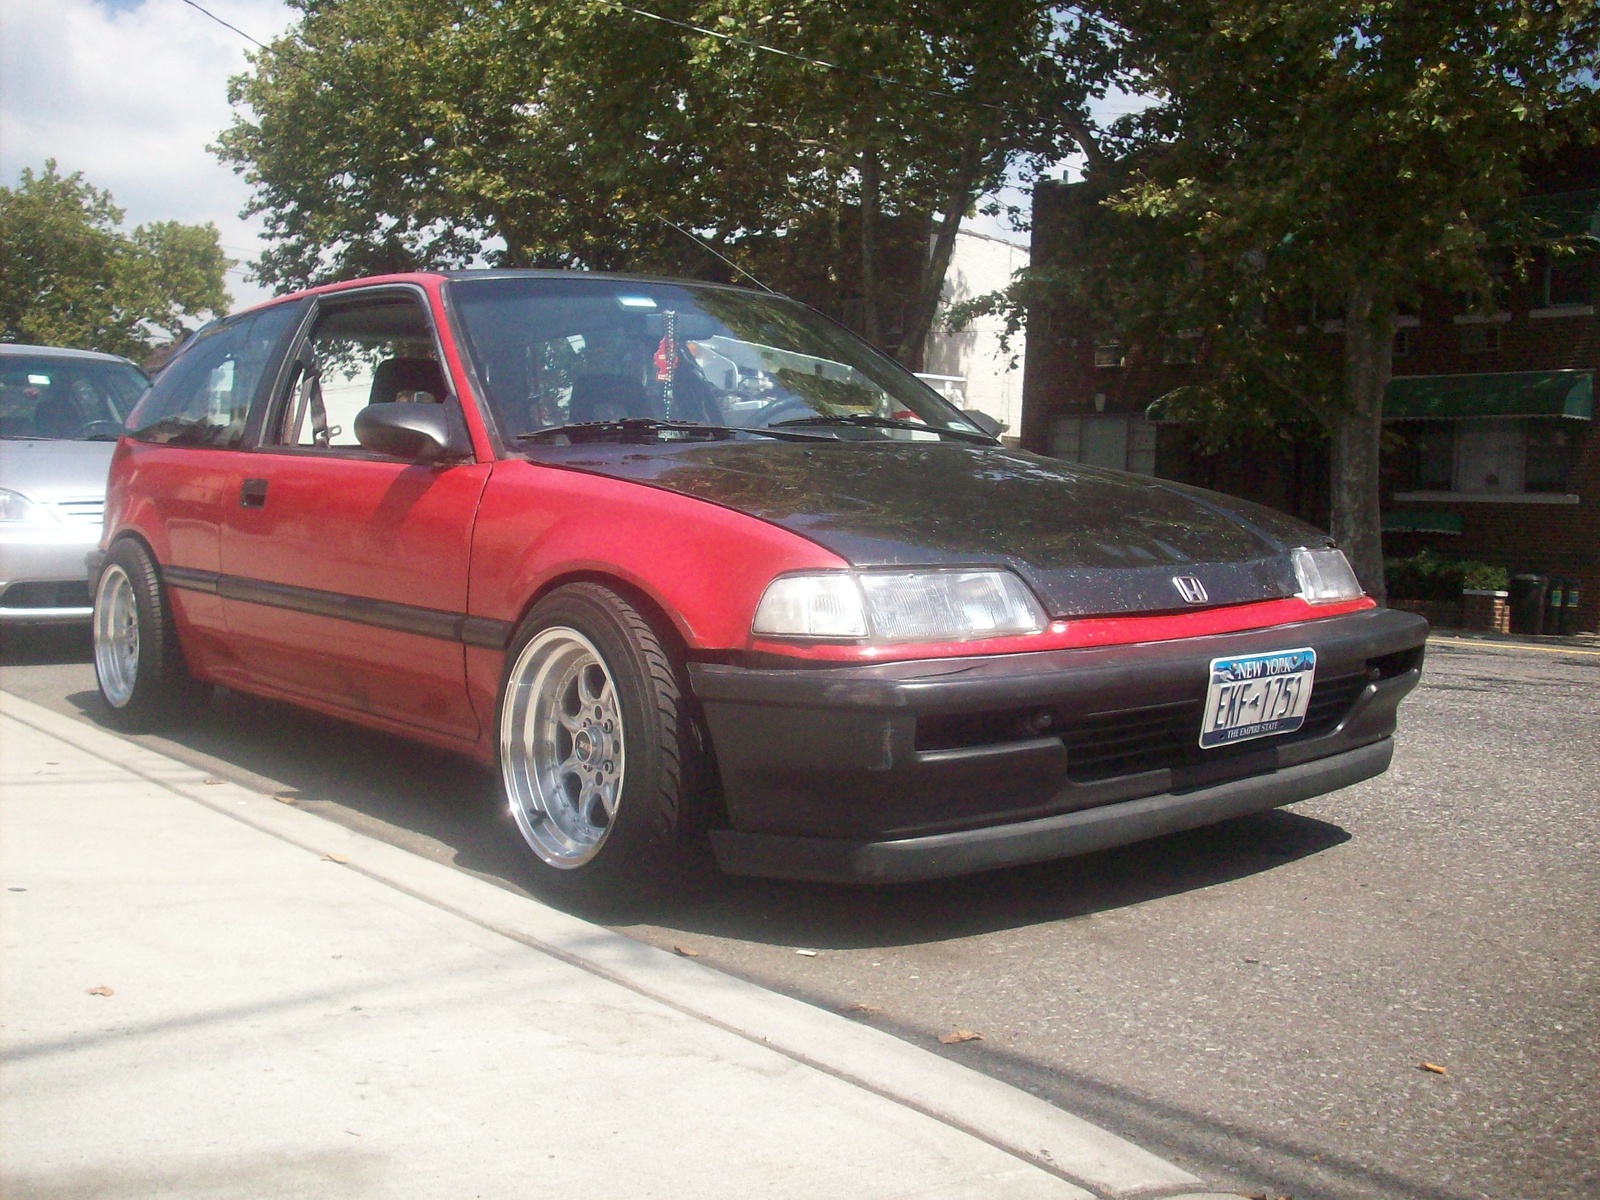 1991 Honda civic dx hatchback review #5